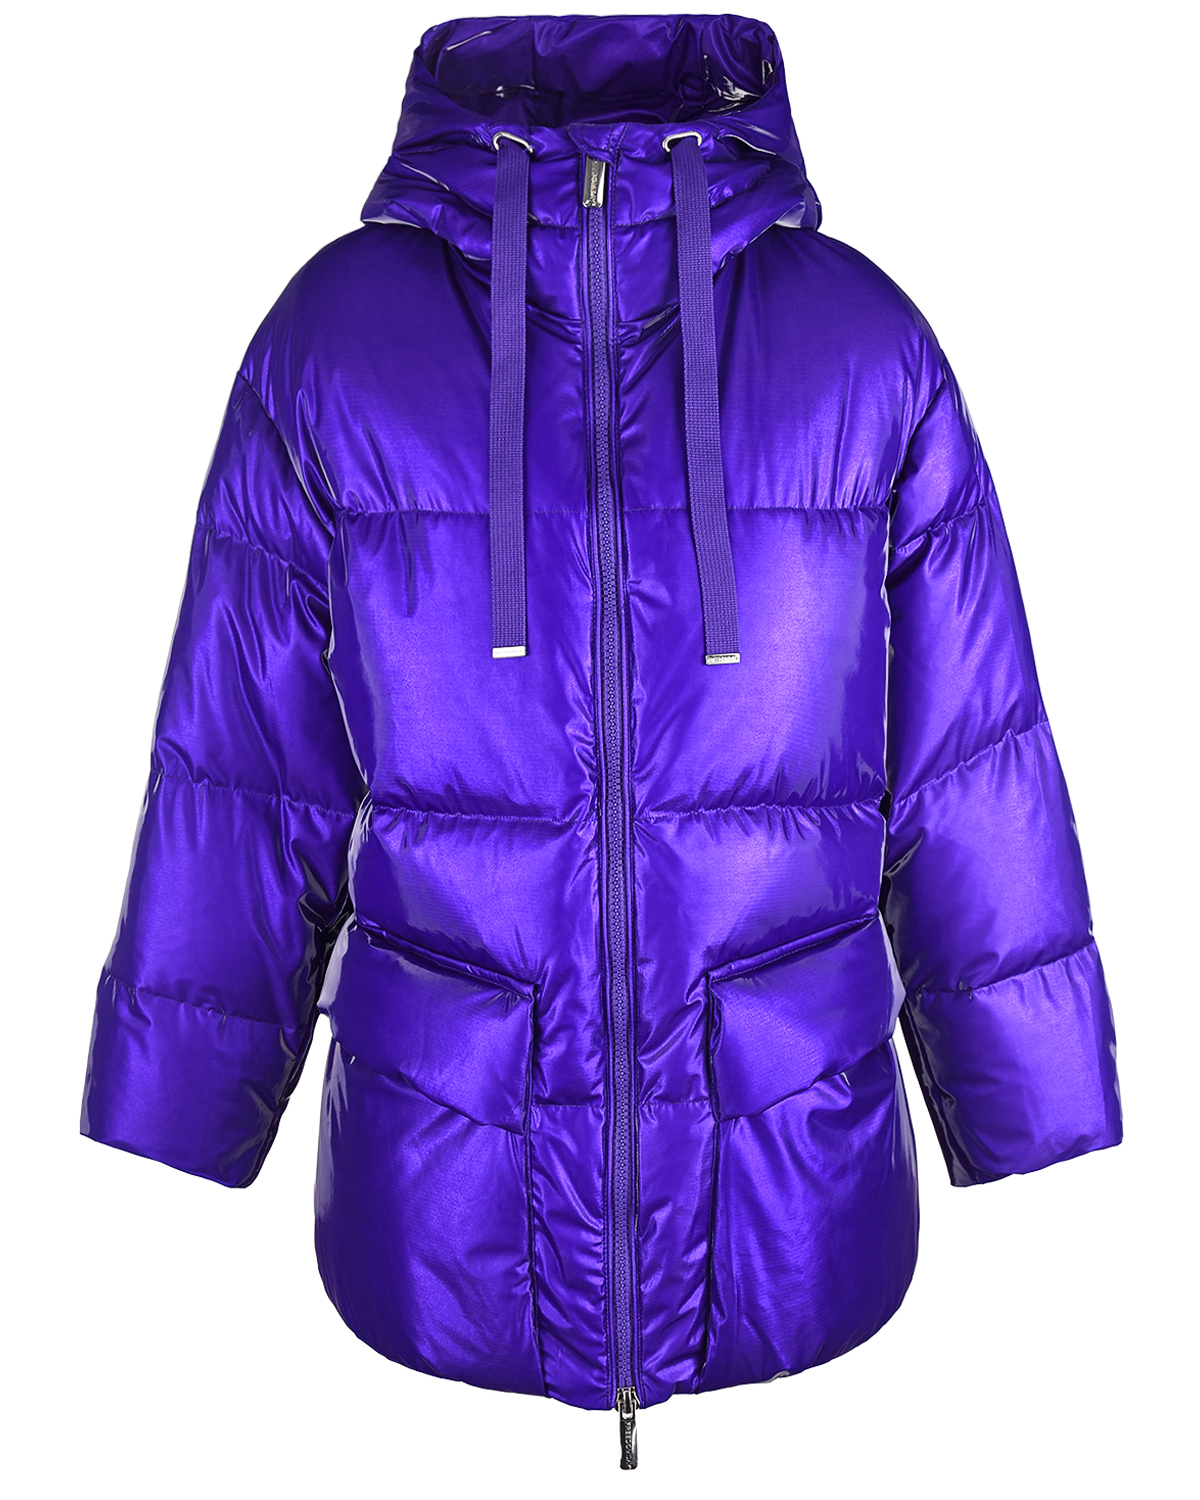 Куртка over fit с принтом на подкладке Freedomday, размер 44, цвет фиолетовый